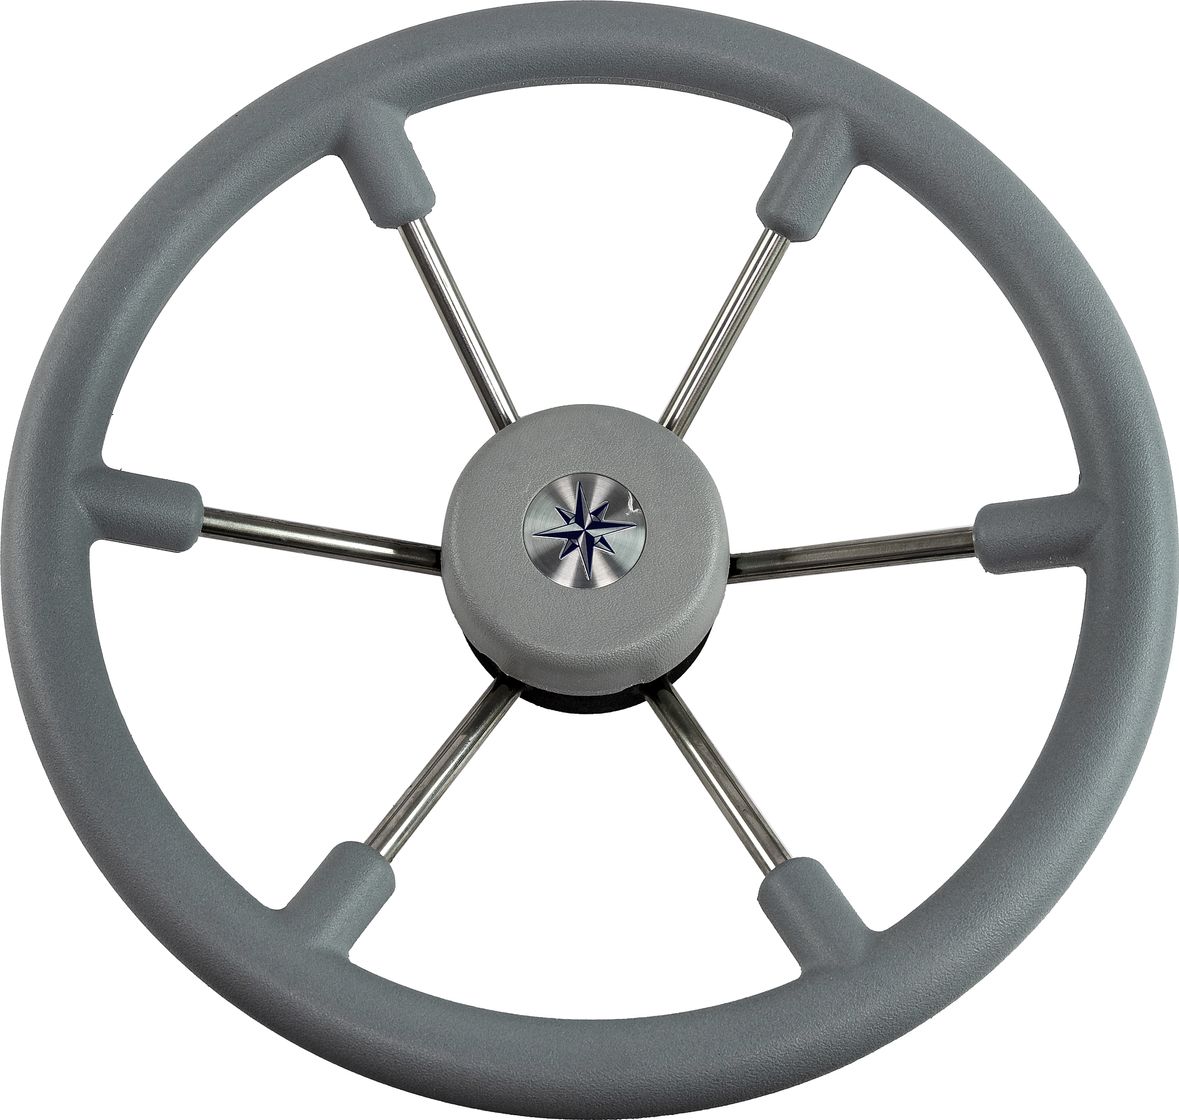 Рулевое колесо LEADER TANEGUM серый обод серебряные спицы д. 360 мм VN7360-03 рулевое колесо leader tanegum белый обод серебряные спицы д 360 мм vn7360 08